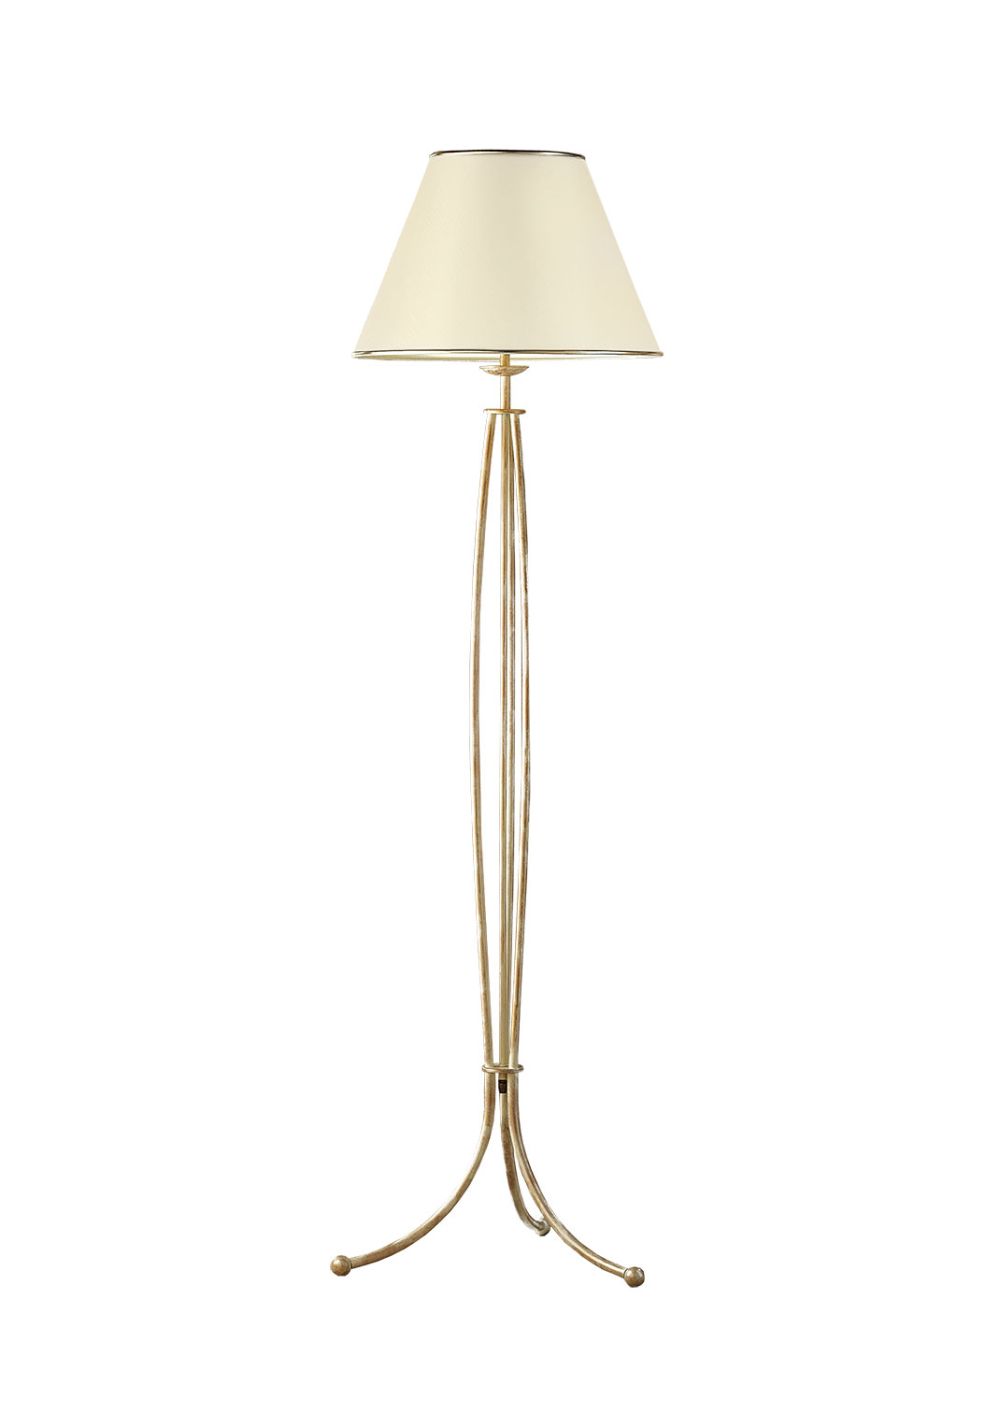 Stehlampe in Shabby Gold 163cm BERTHA Leuchte E27